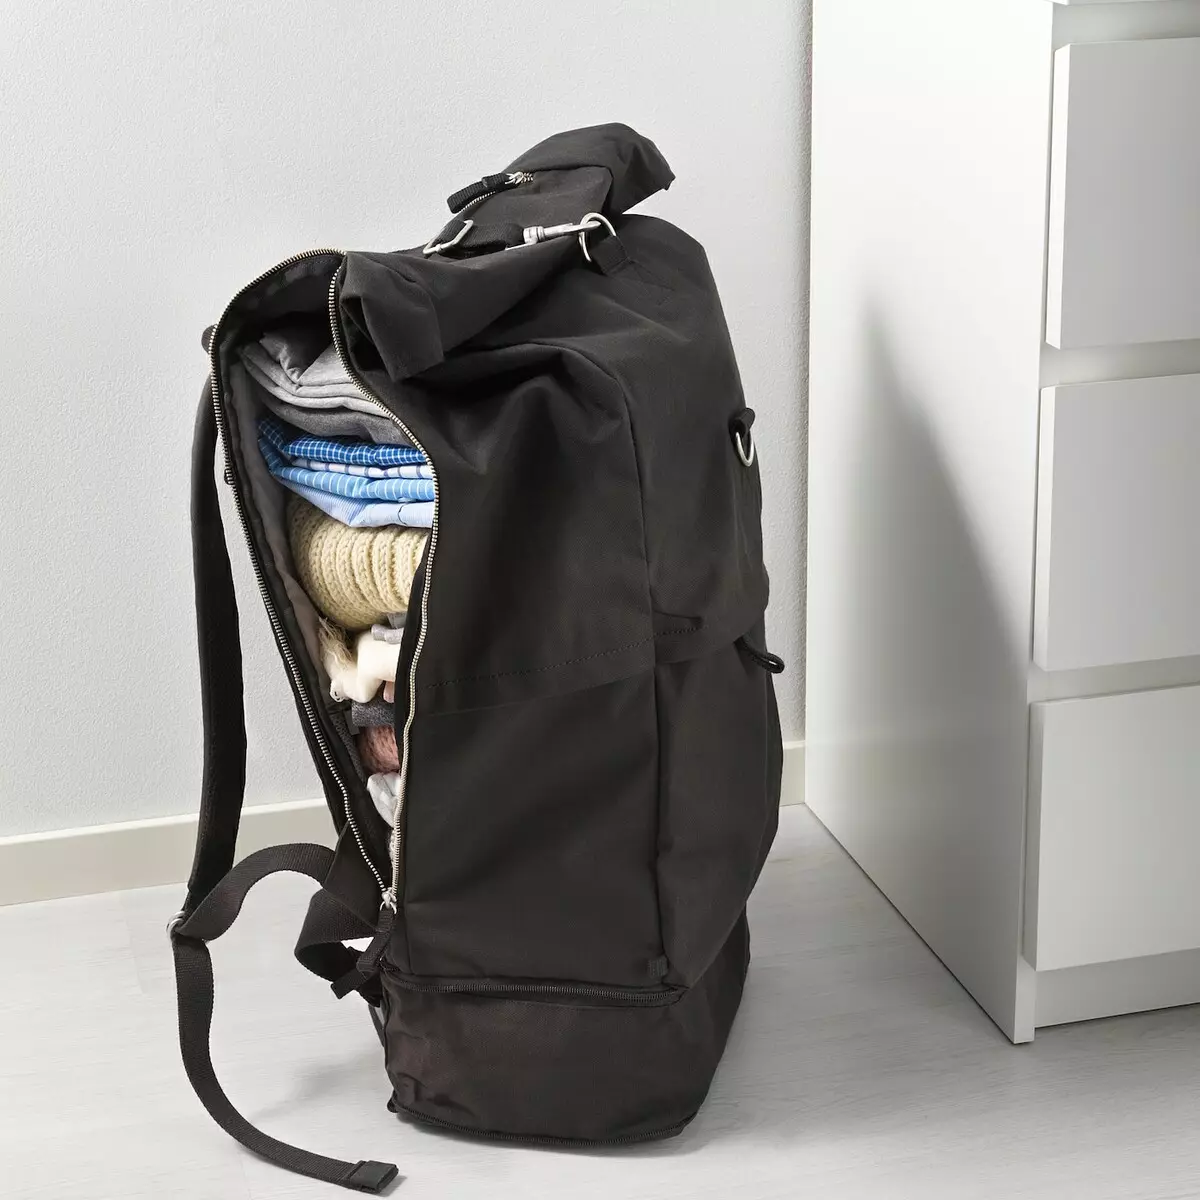 Backpacks Ikea: Ny fijerena ny valizy mainty-kitapo mainty sy ny modely hafa, ny fomba hikarakarana azy 15421_12